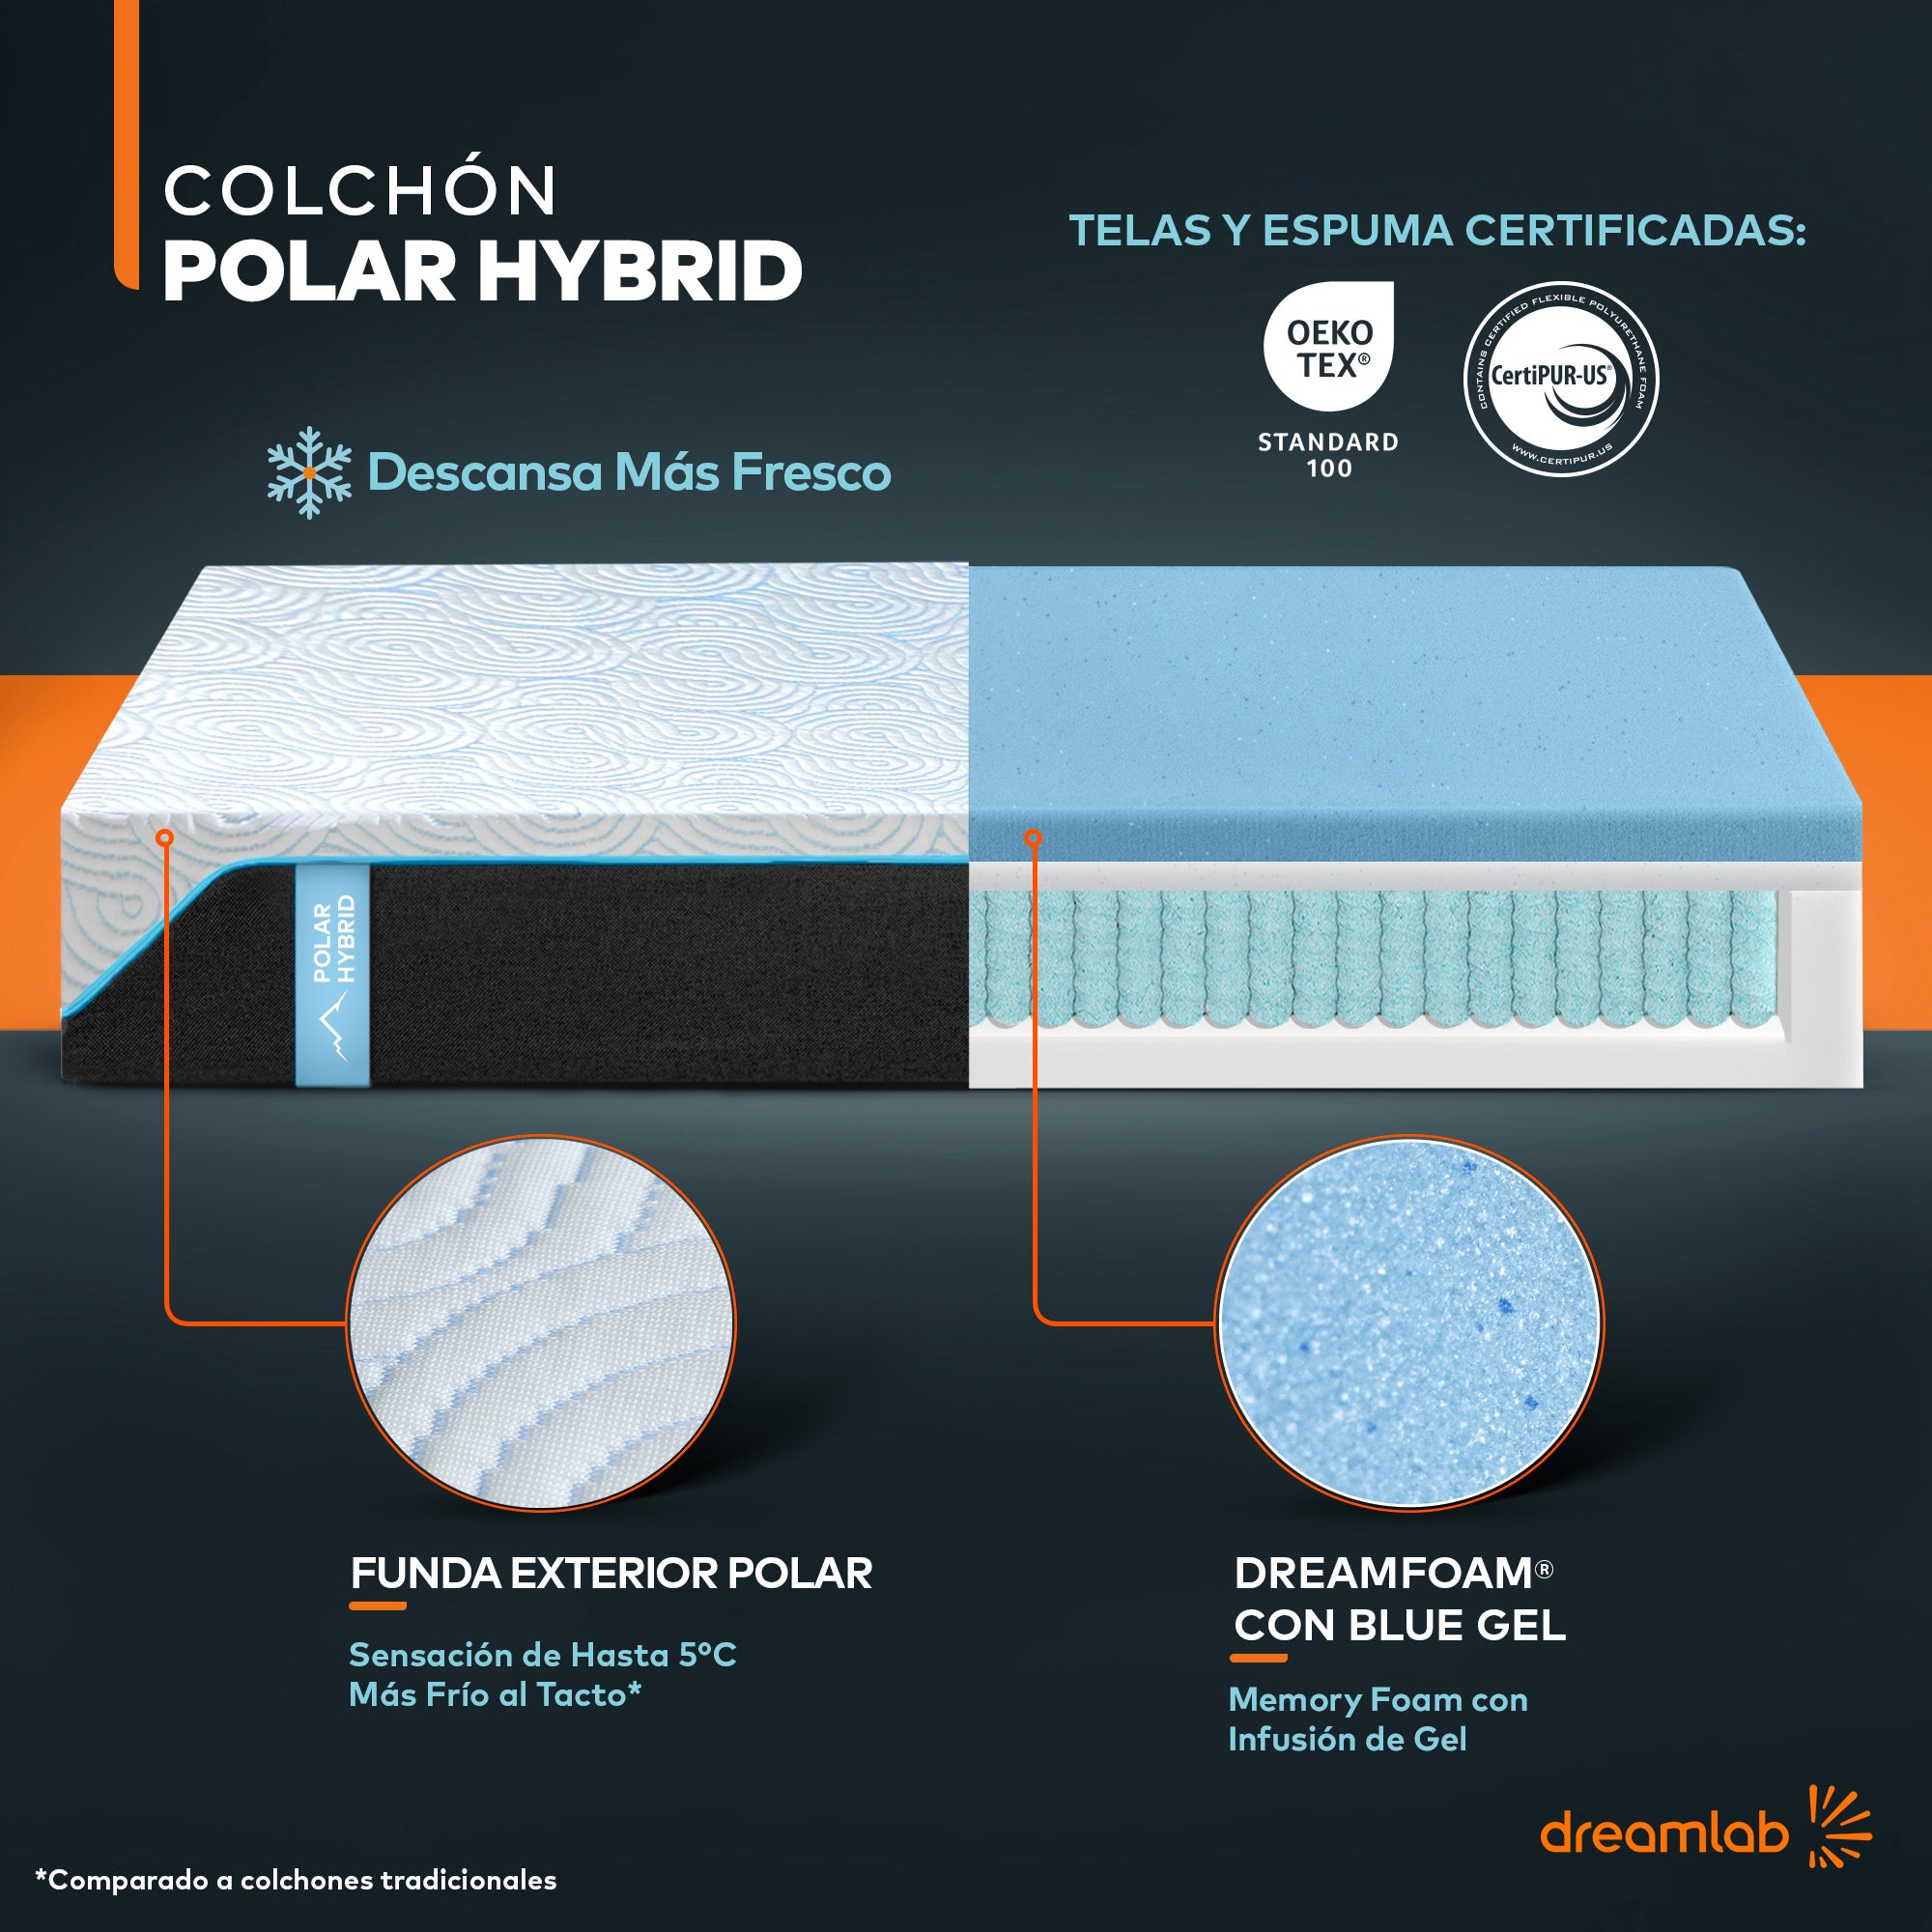 Colchón Polar Hybrid